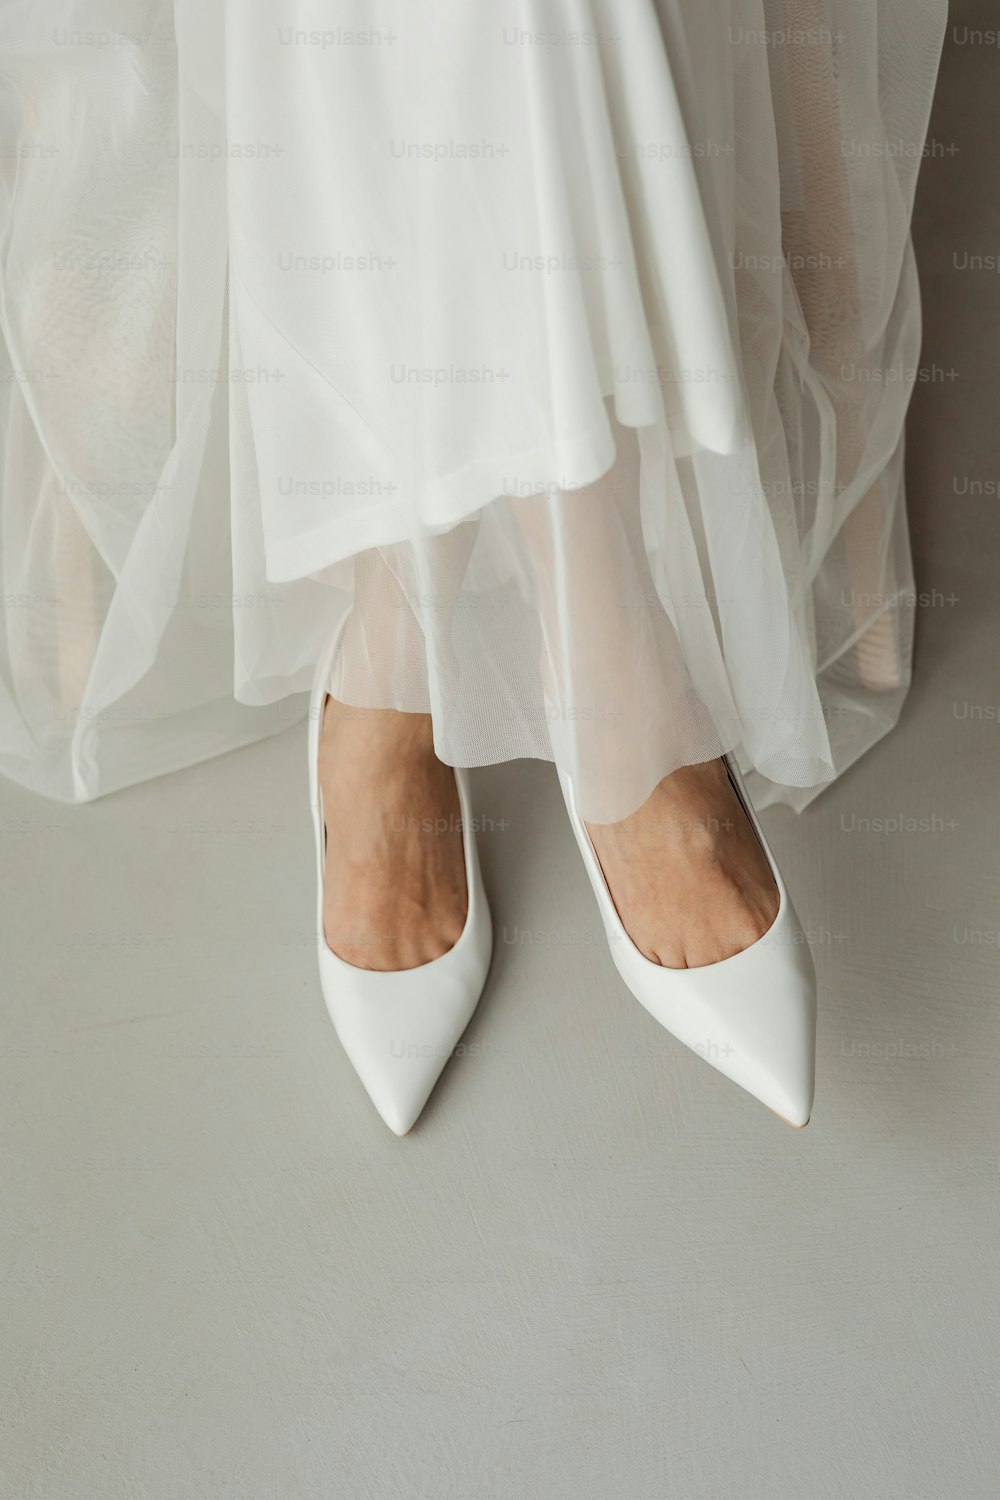 um close up de uma pessoa usando sapatos brancos